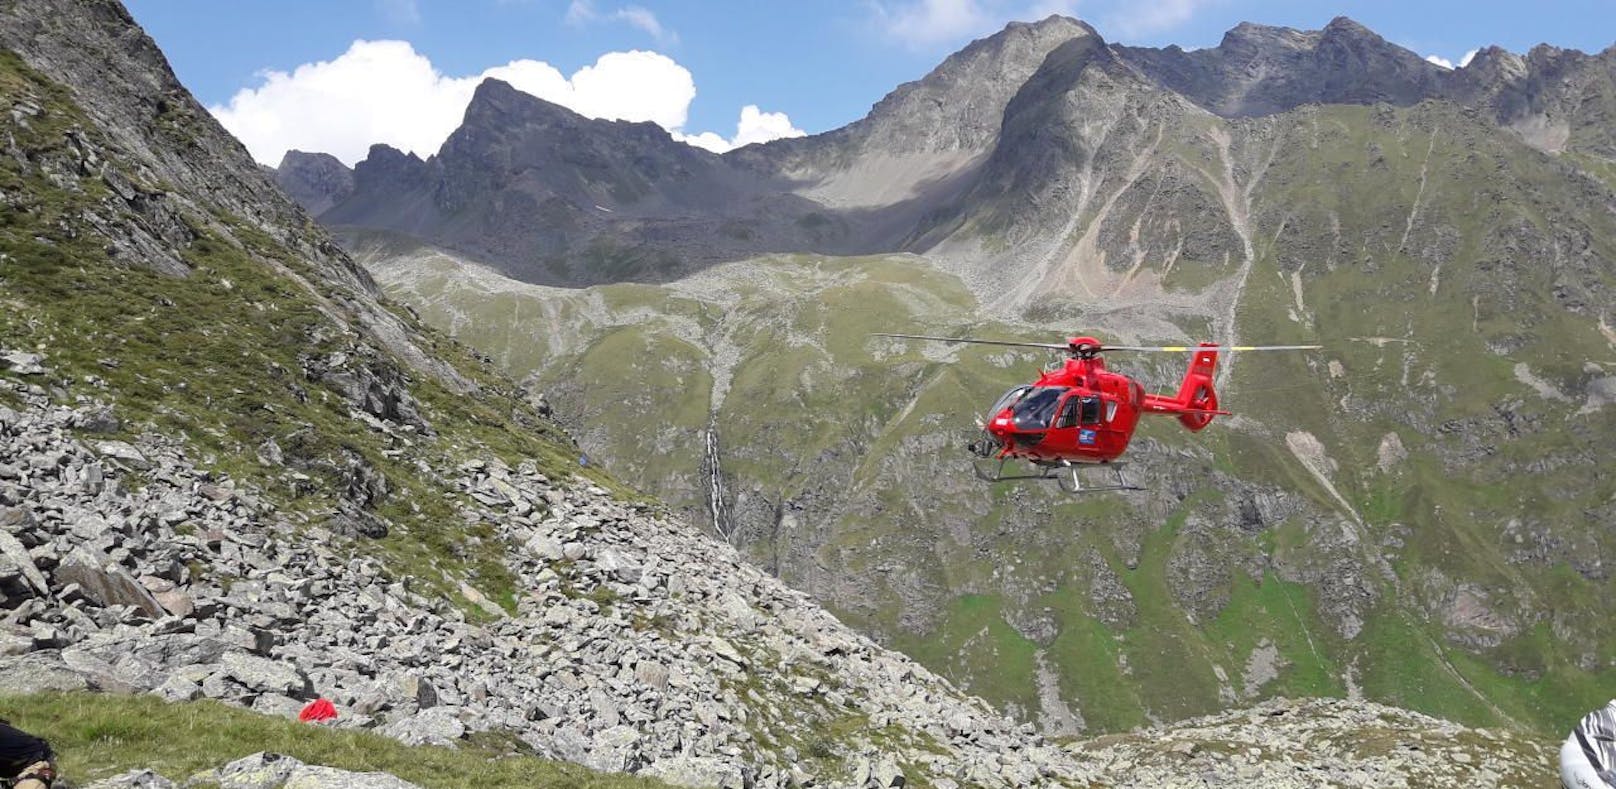 Alpinunfall in Telfs, Tirol: Ein 71-jähriger Kletterer verlor Halt und stürzte 150 Meter hinab in den Tod. (Symbolfoto)